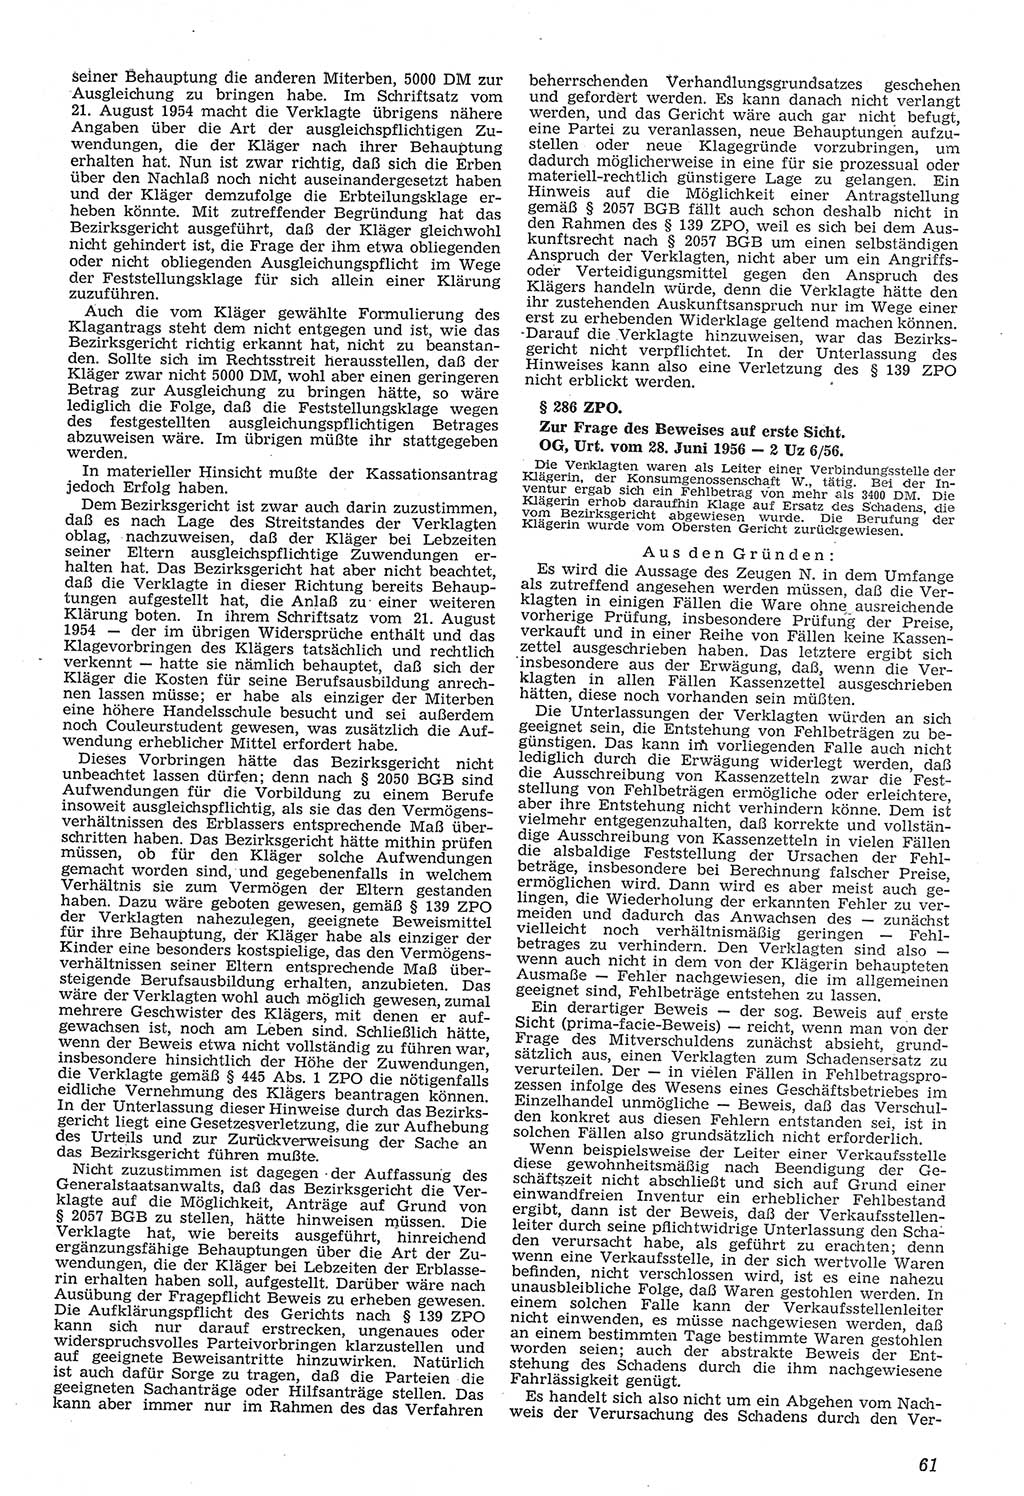 Neue Justiz (NJ), Zeitschrift für Recht und Rechtswissenschaft [Deutsche Demokratische Republik (DDR)], 11. Jahrgang 1957, Seite 61 (NJ DDR 1957, S. 61)